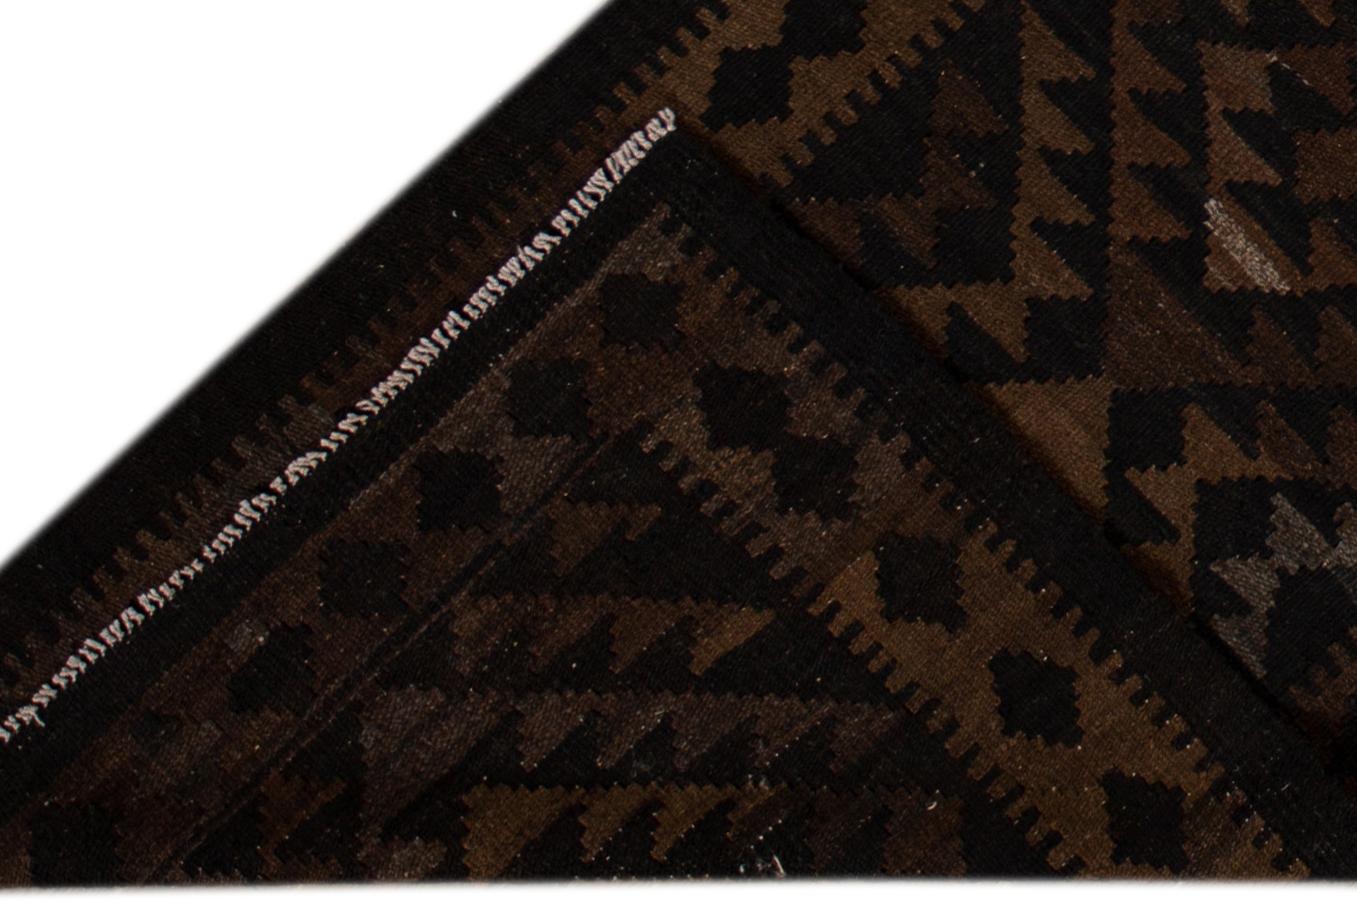 Schöner zeitgenössischer Kilim-Teppich aus handgeknüpfter Wolle mit schwarzem Feld und braunen Akzenten in einem geometrischen Multi-Medaillon-Design.
Dieser Teppich misst 2' 9